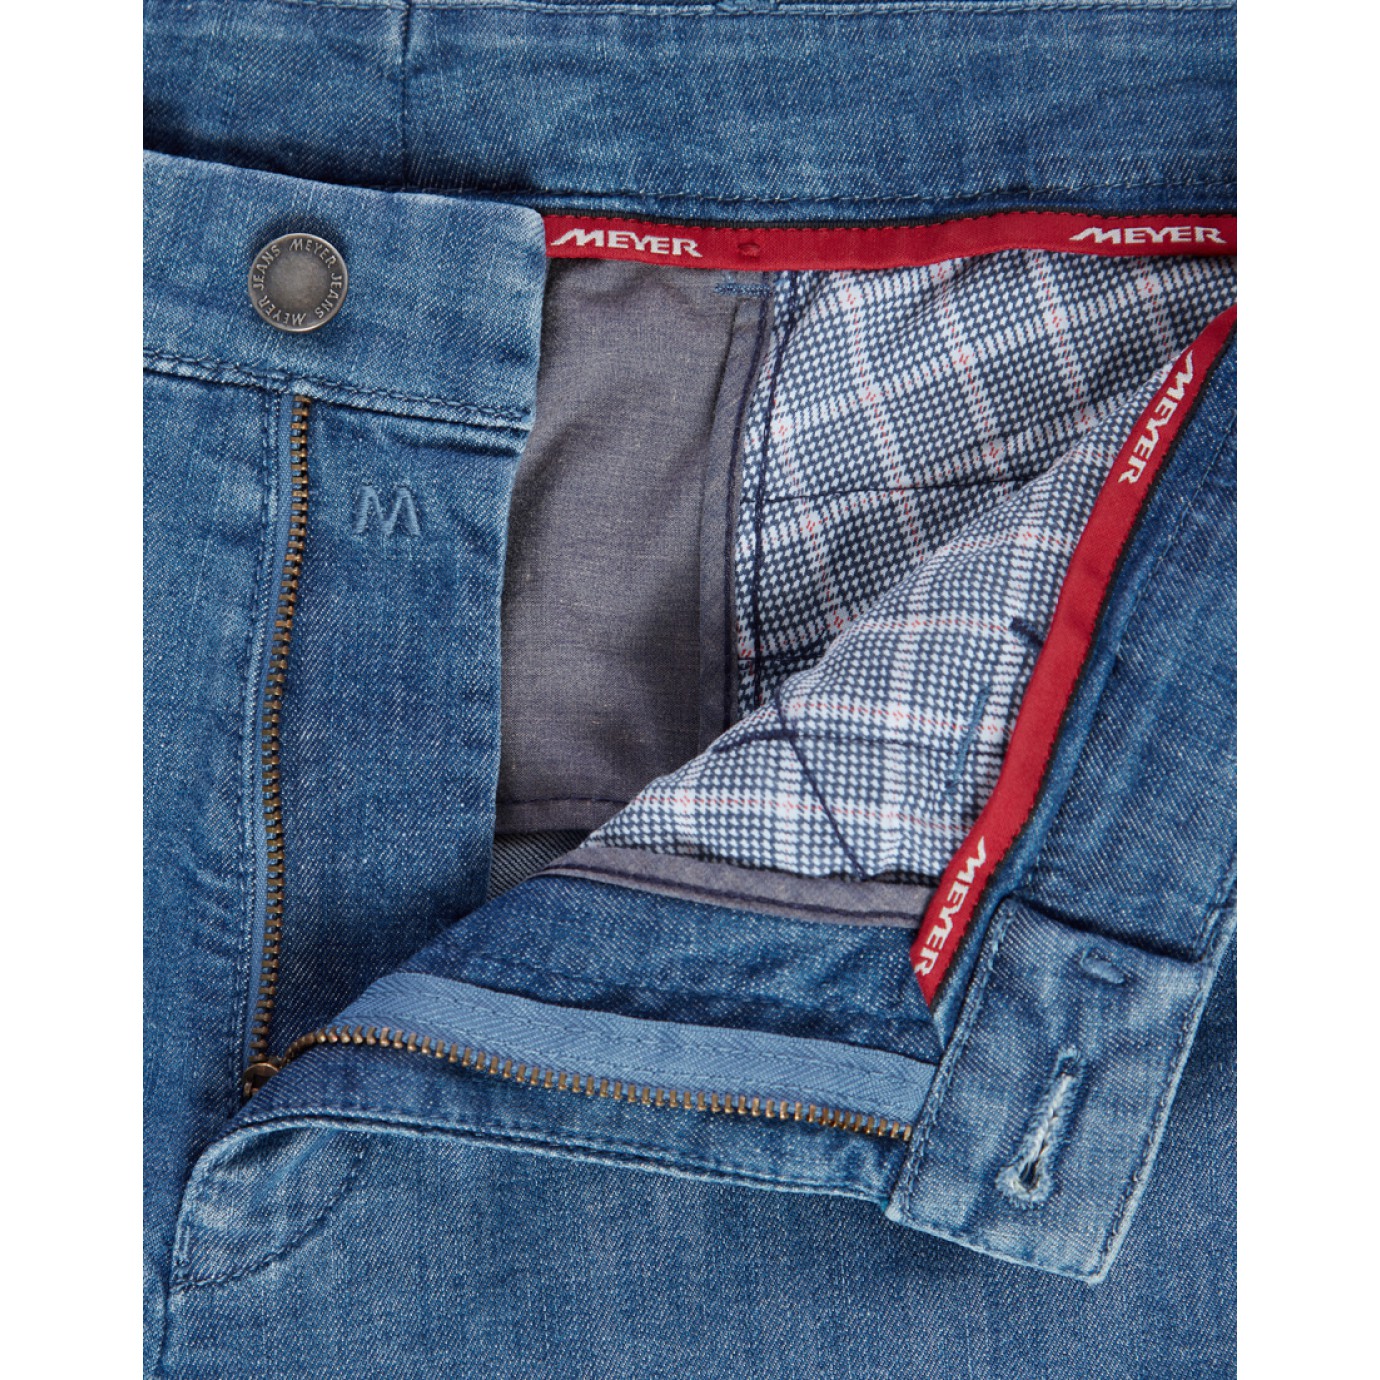 Брюки мужские Meyer Dublin 5-481/18, синие с джинсовым карманом купить вМоскве в интернет-магазине SHOP4BIG - цена, фото, описание